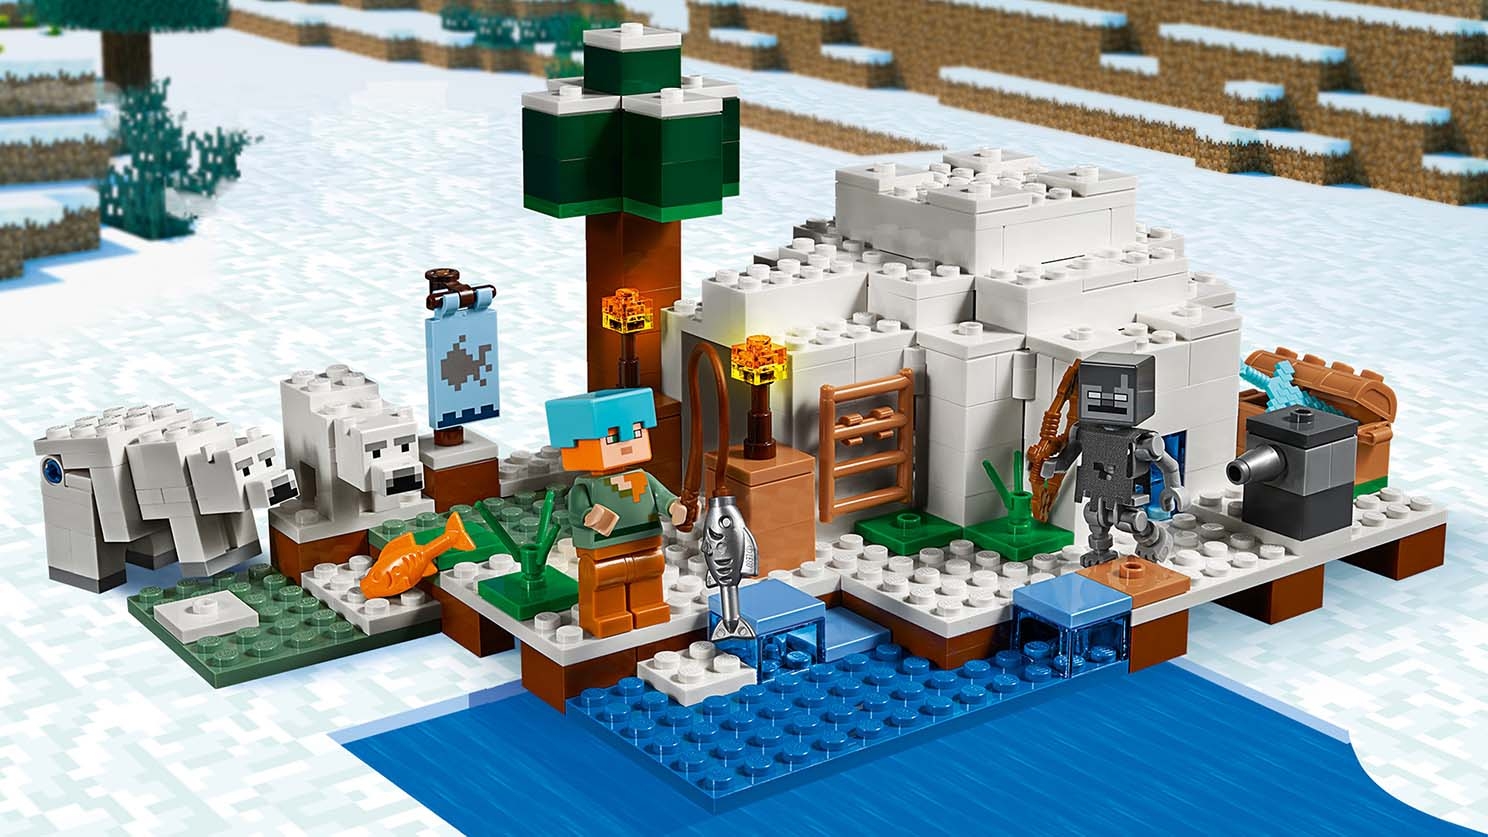 Polar Igloo 21142 - Minecraft™ Sets - LEGO.com for kids